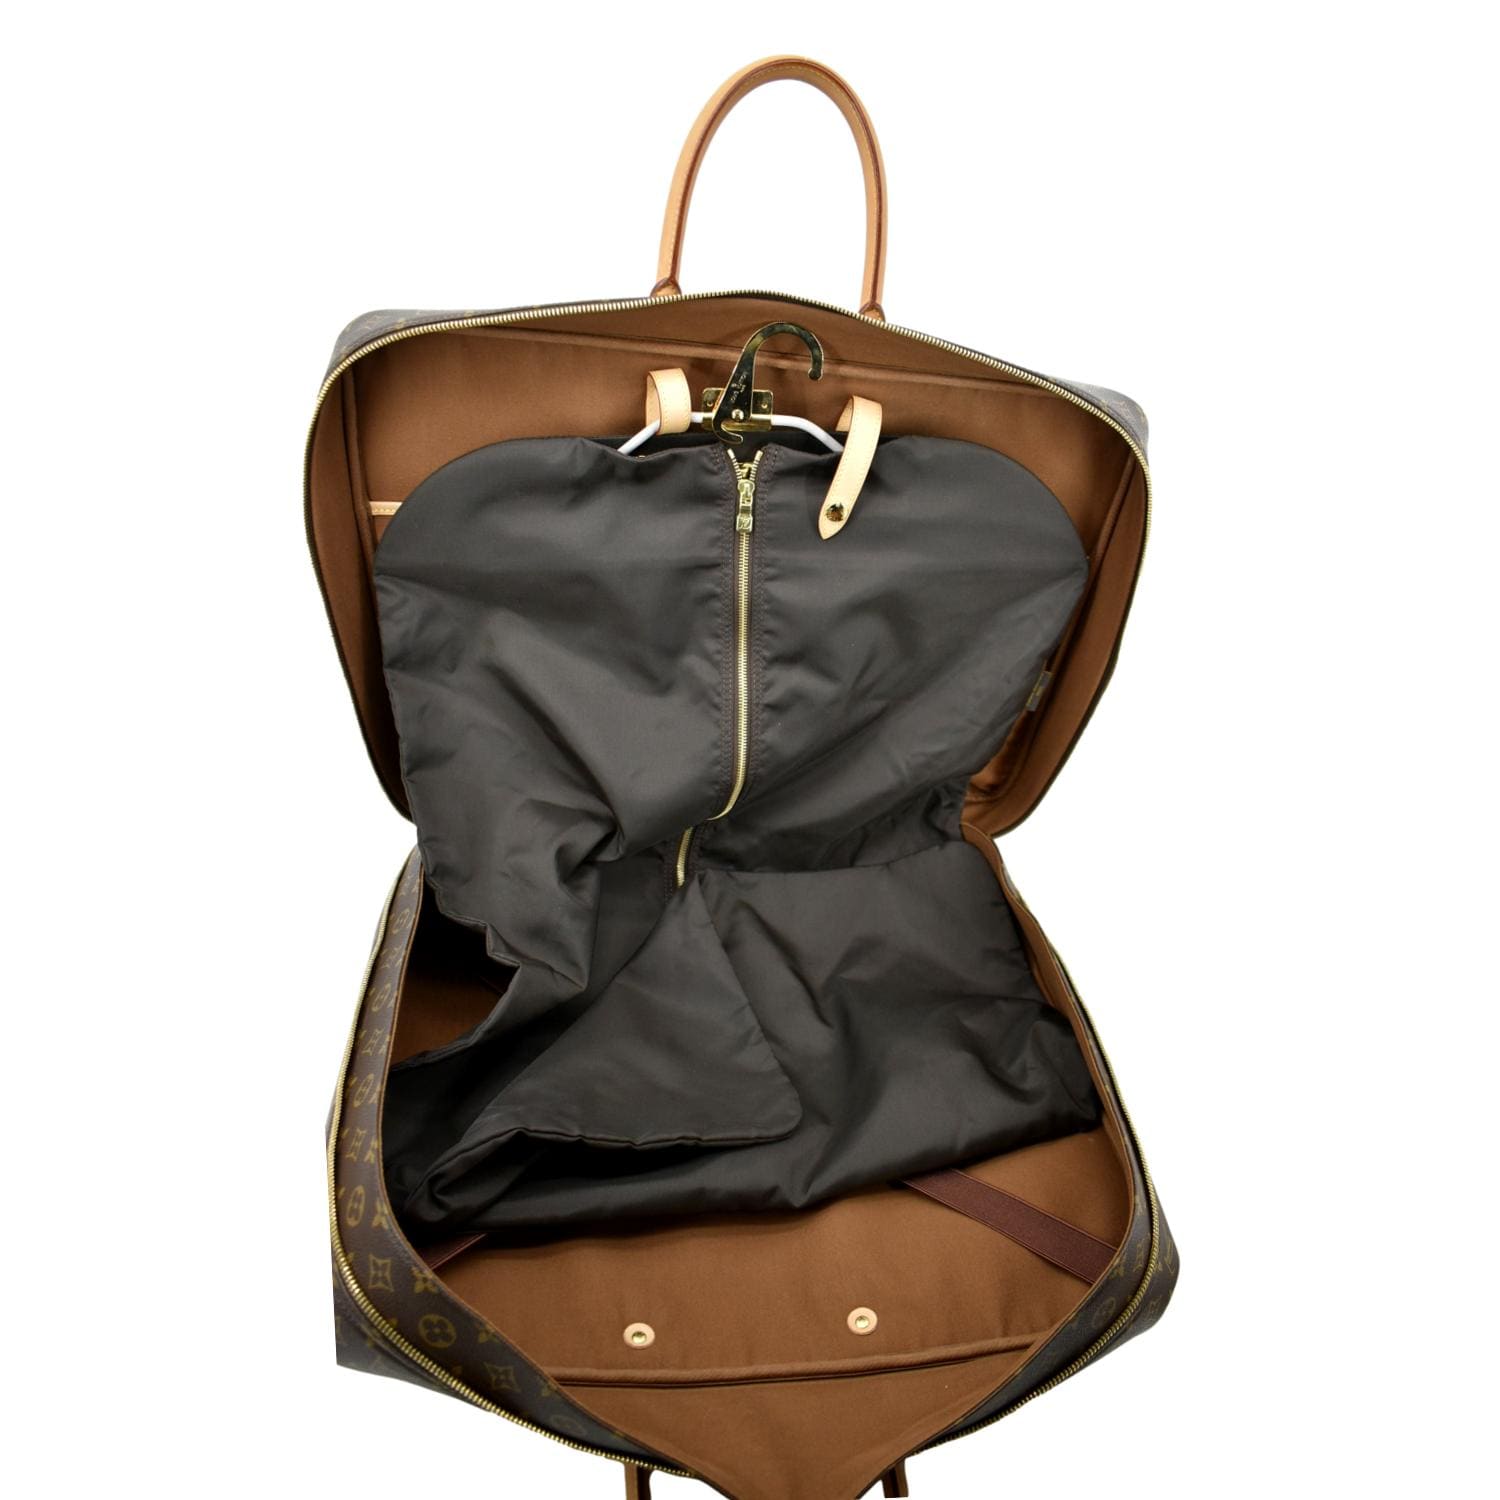 Authentic LOUIS VUITTON Sirius 45 Monogram Suitcase Travel Business Bag  #53114